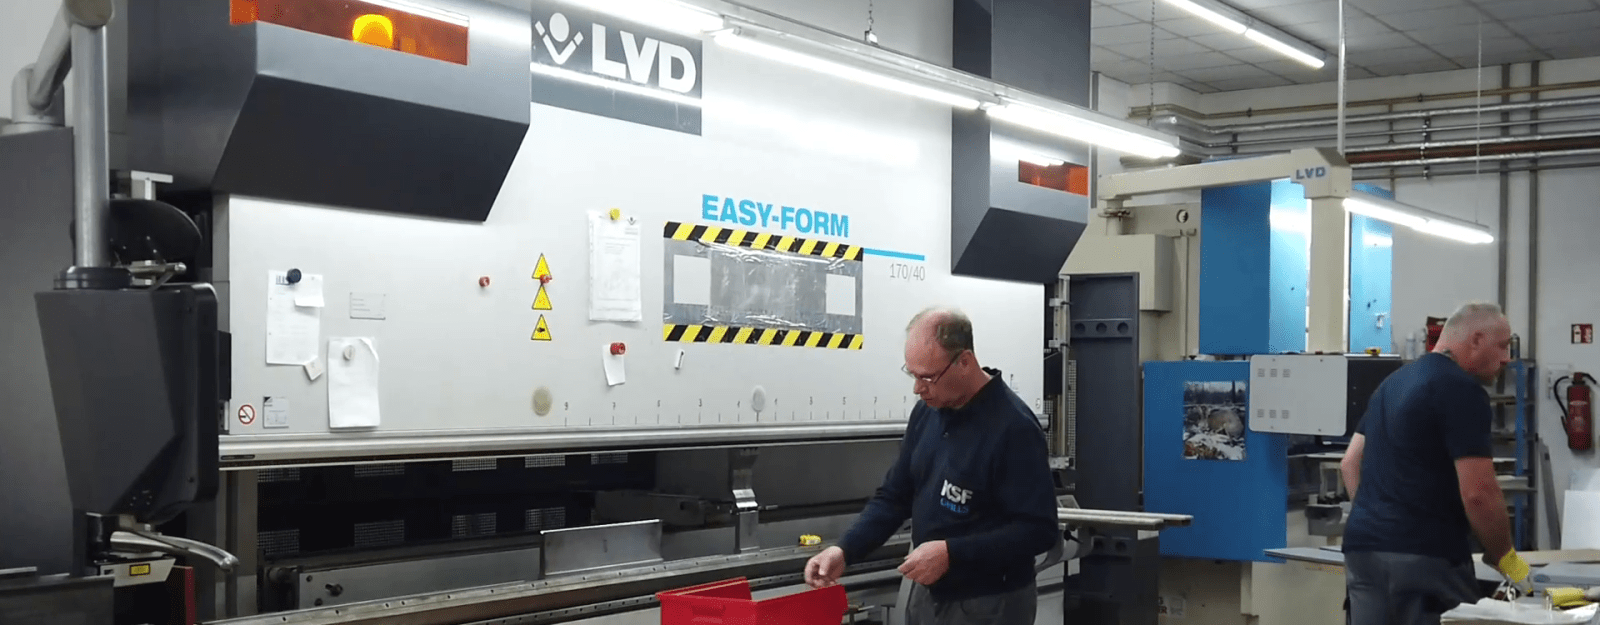 KSF Grillgeräte - LVD Machines & effiziente Partnerschaft